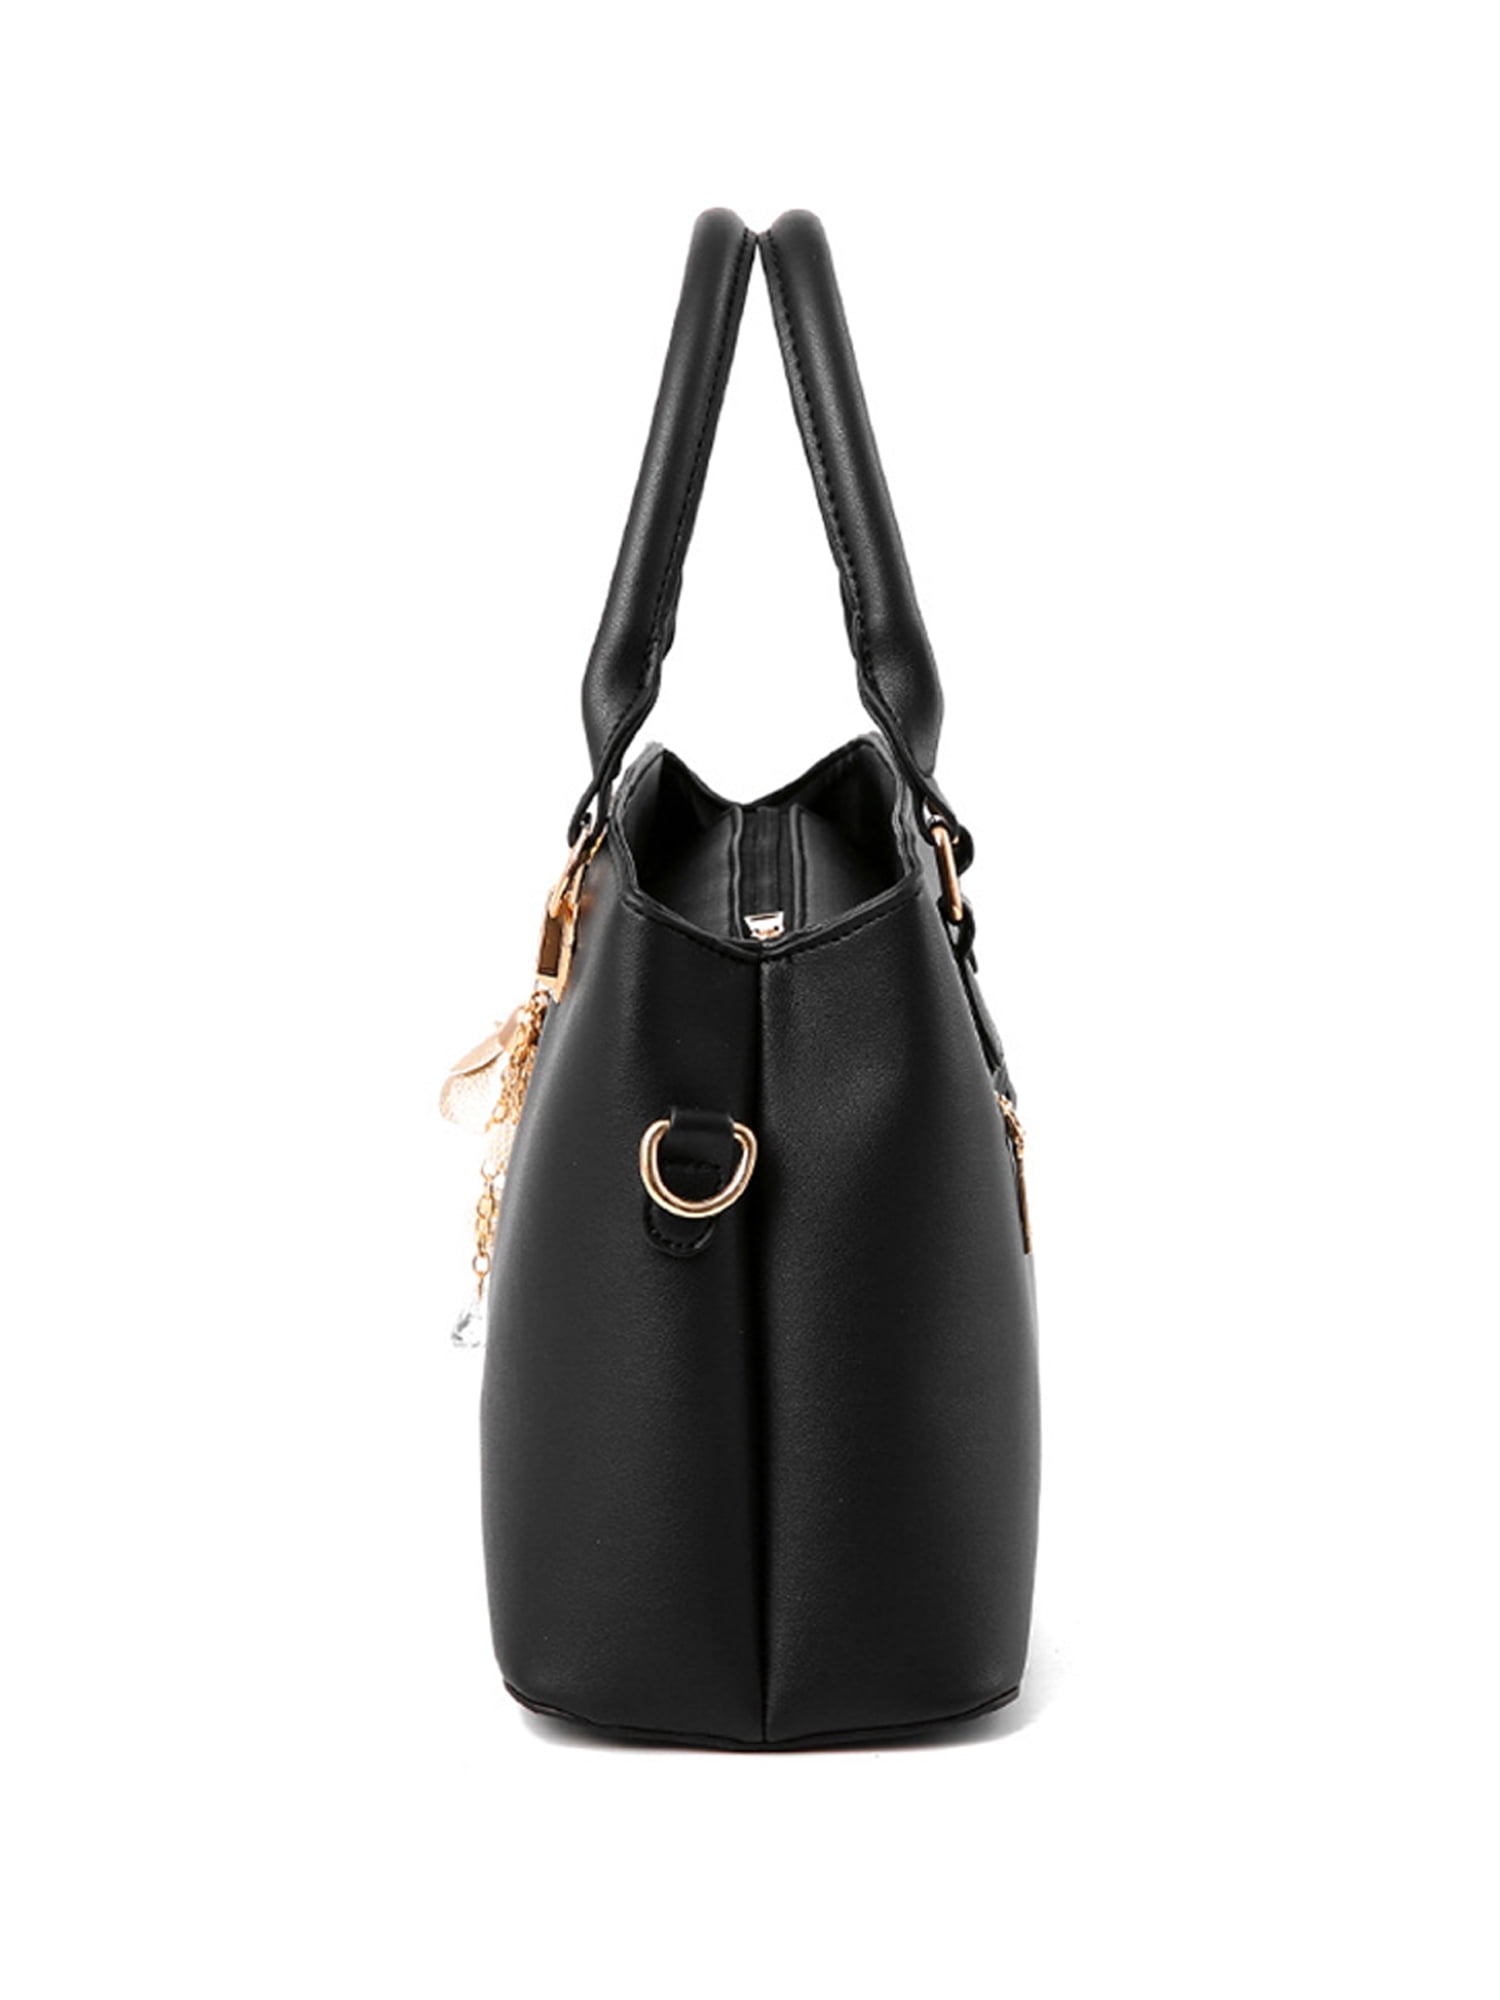 Frontwalk Women Handbag Top Handle Tote Bag Designer Chain Shoulder Bags  Large Capacity Ladies Black